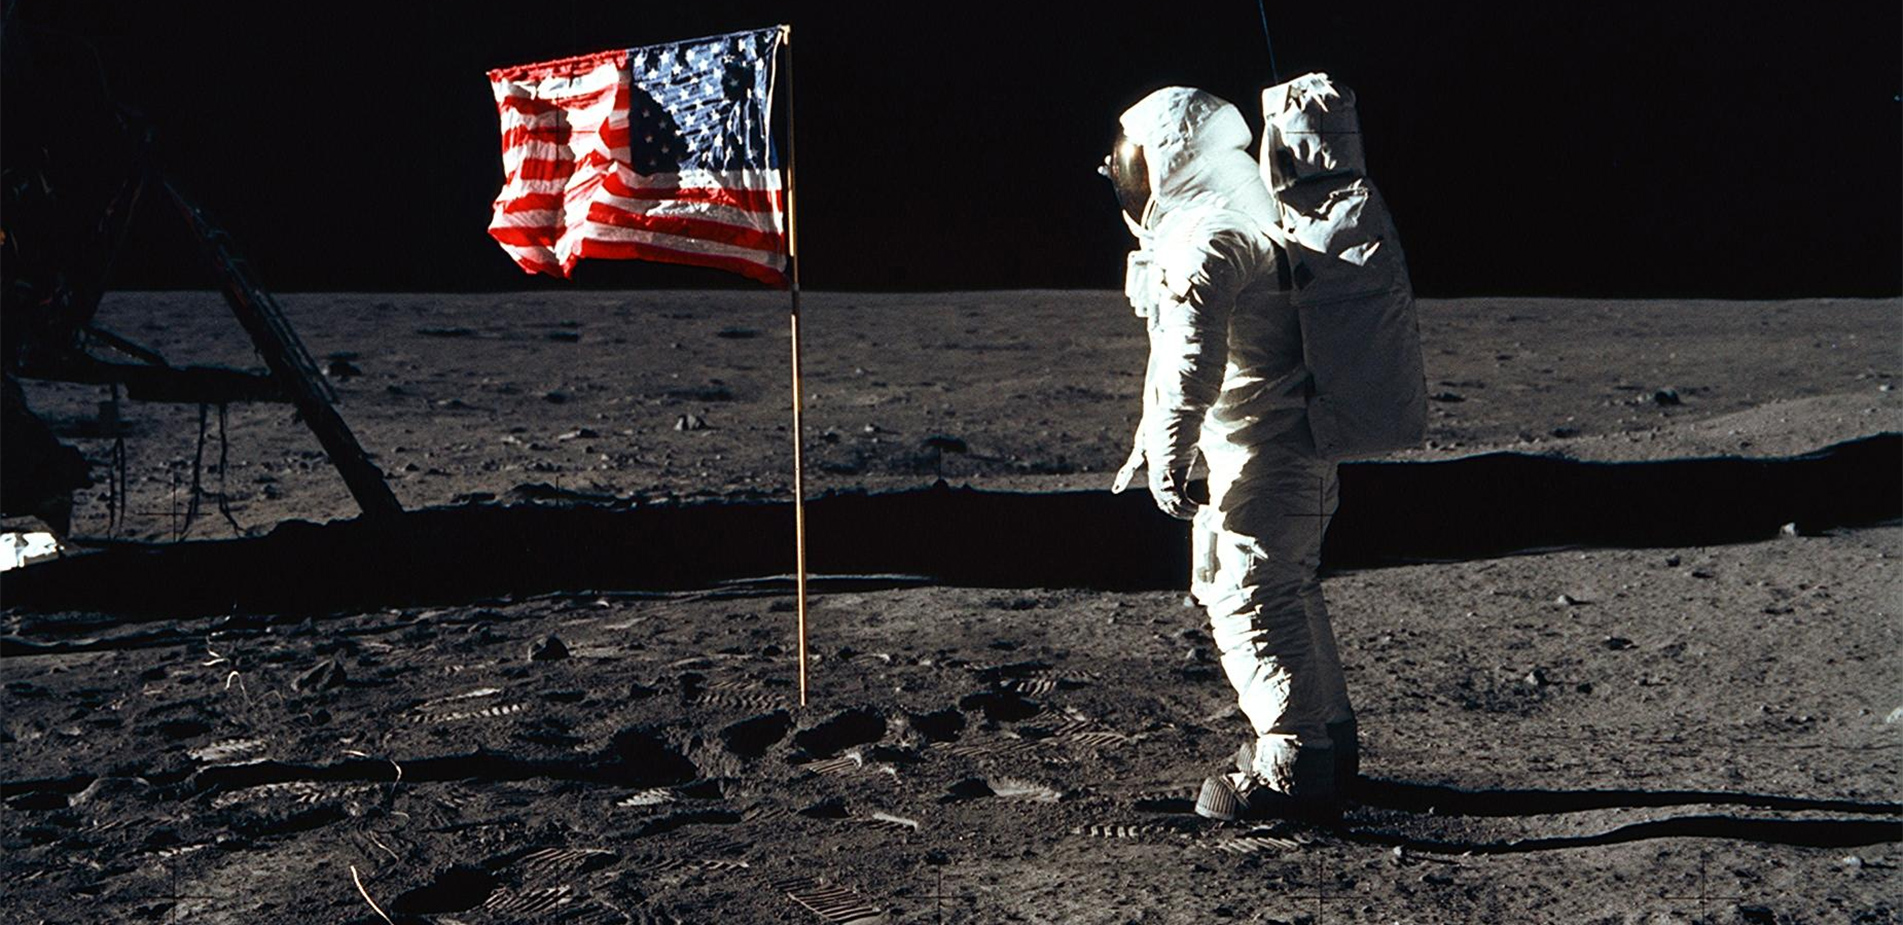 Η ημέρα που ο άνθρωπος πάτησε στη Σελήνη και οι θεωρίες συνωμοσίας: Οι σκιές, τα αστέρια, η αμερικανική σημαία και τι πραγματικά ισχύει